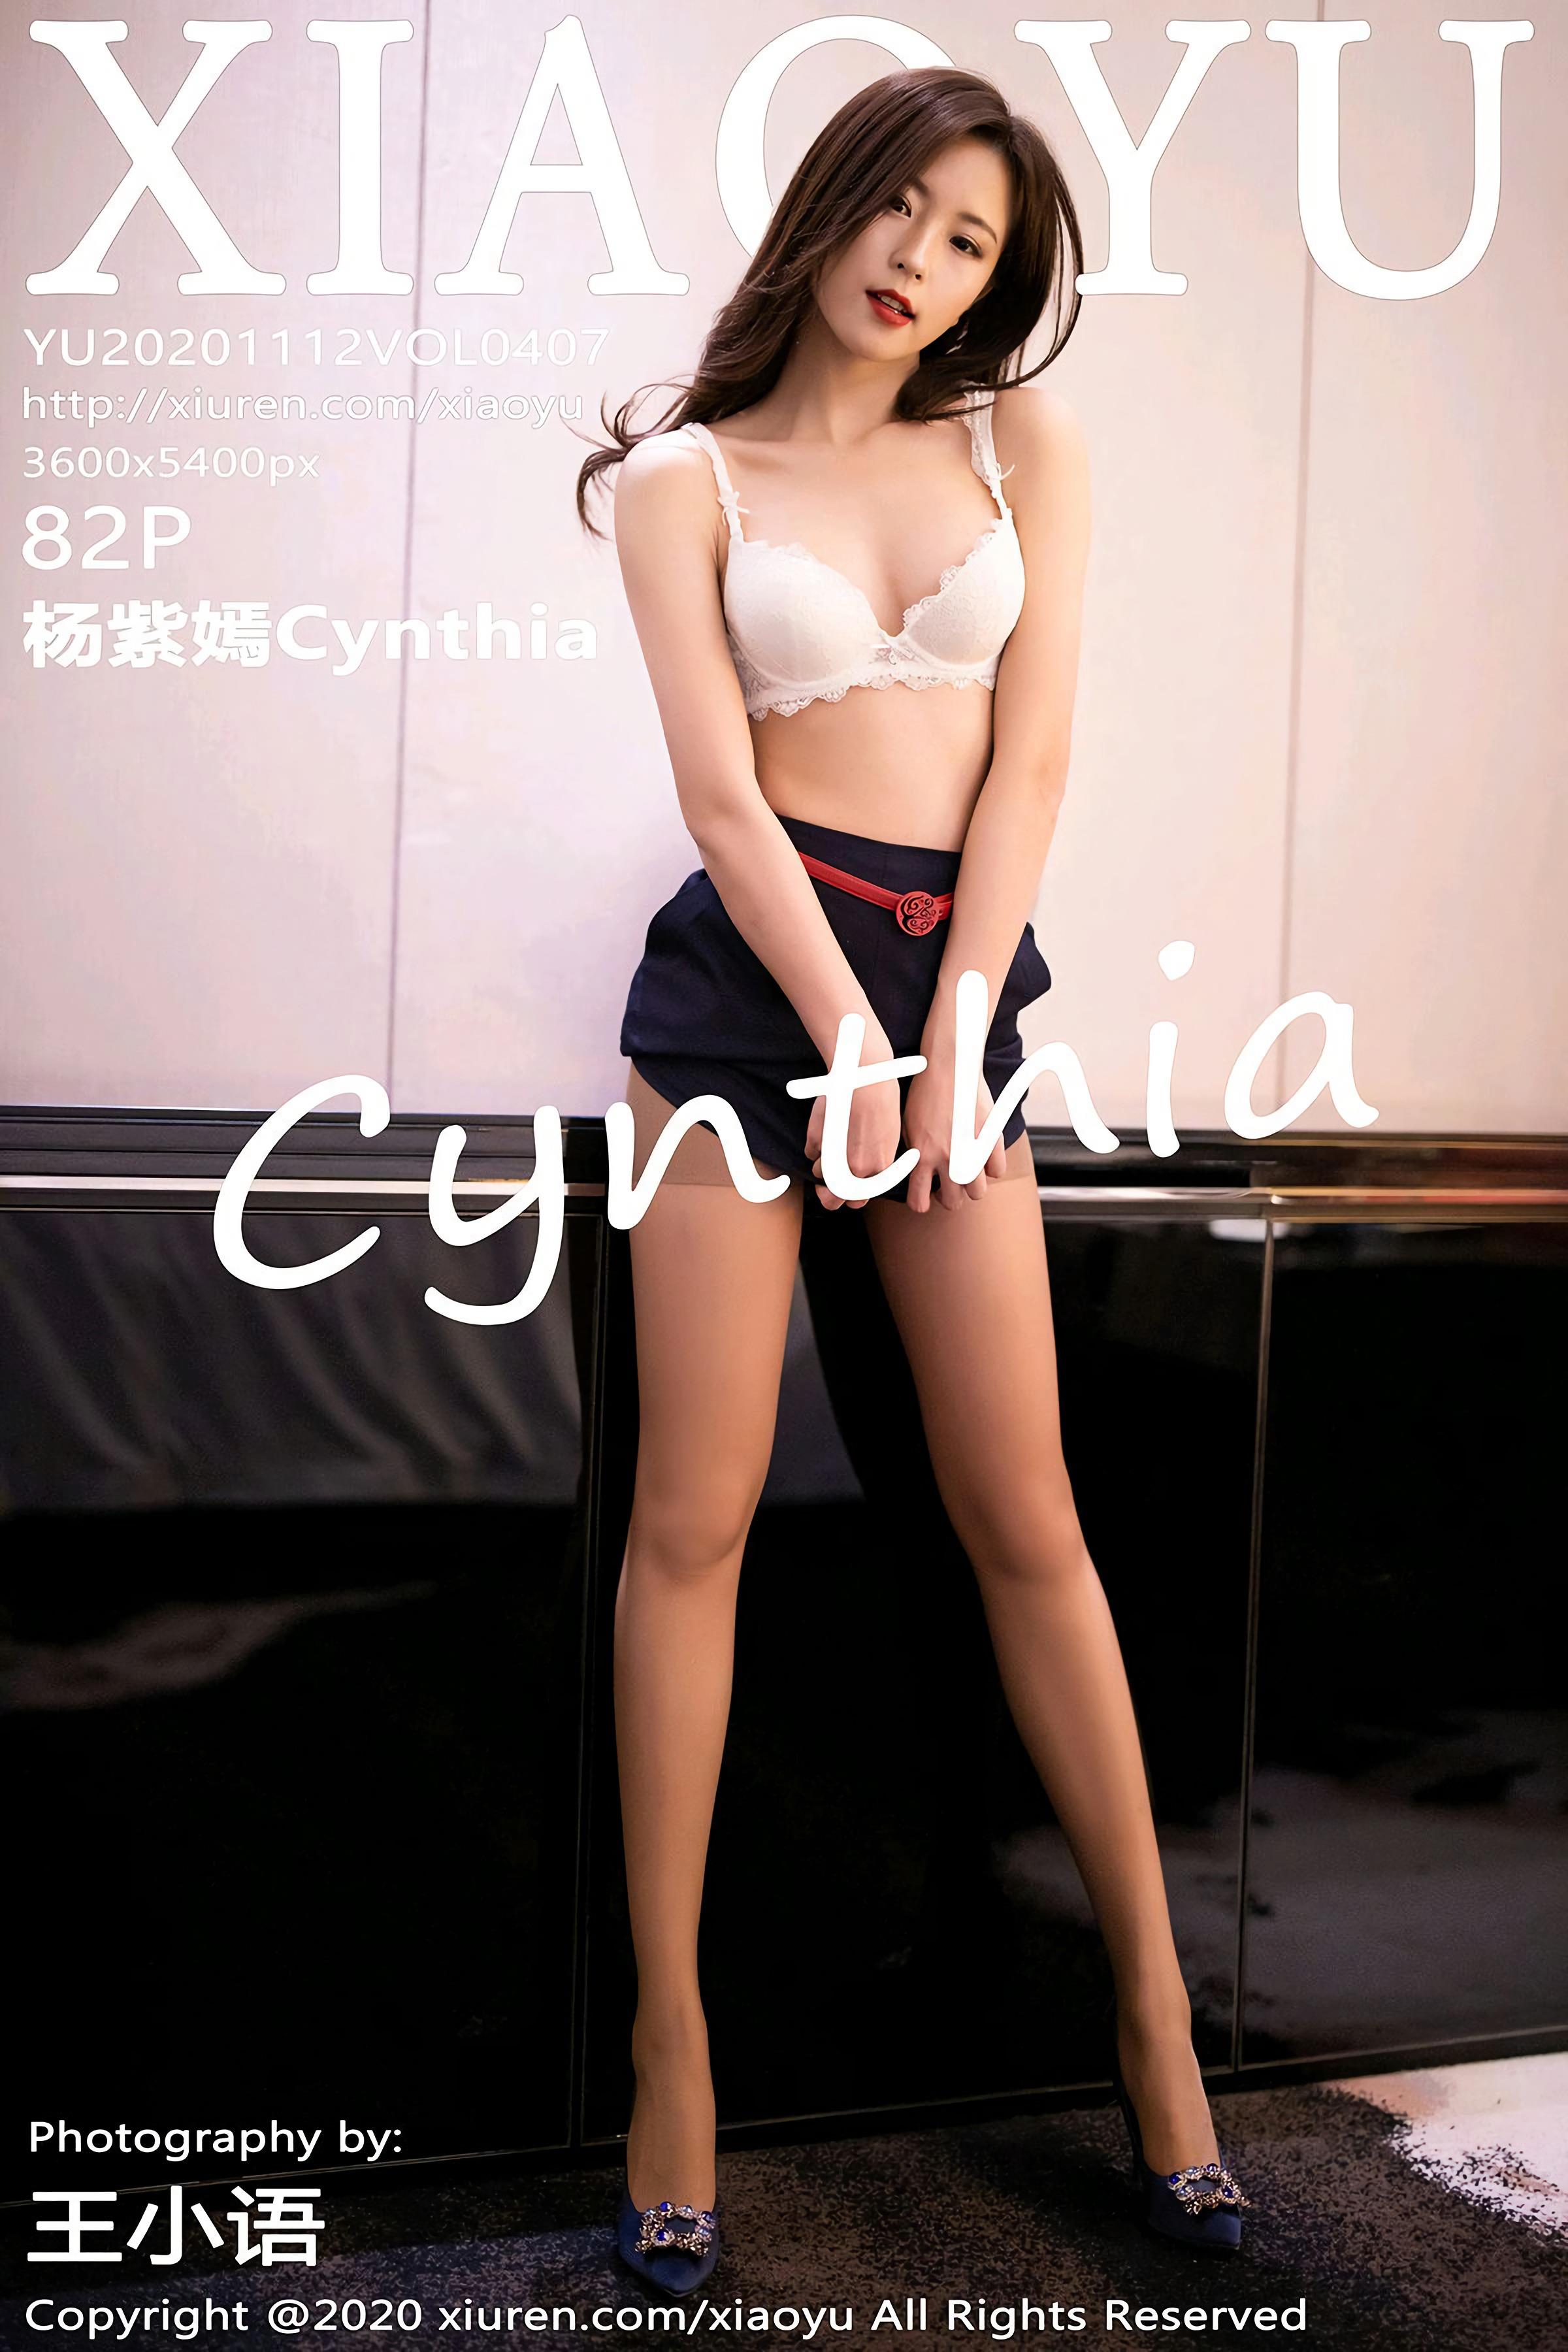 Xiaoyu语画界 2020.11.12 VOL.407 杨紫嫣Cynthia - 83.jpg